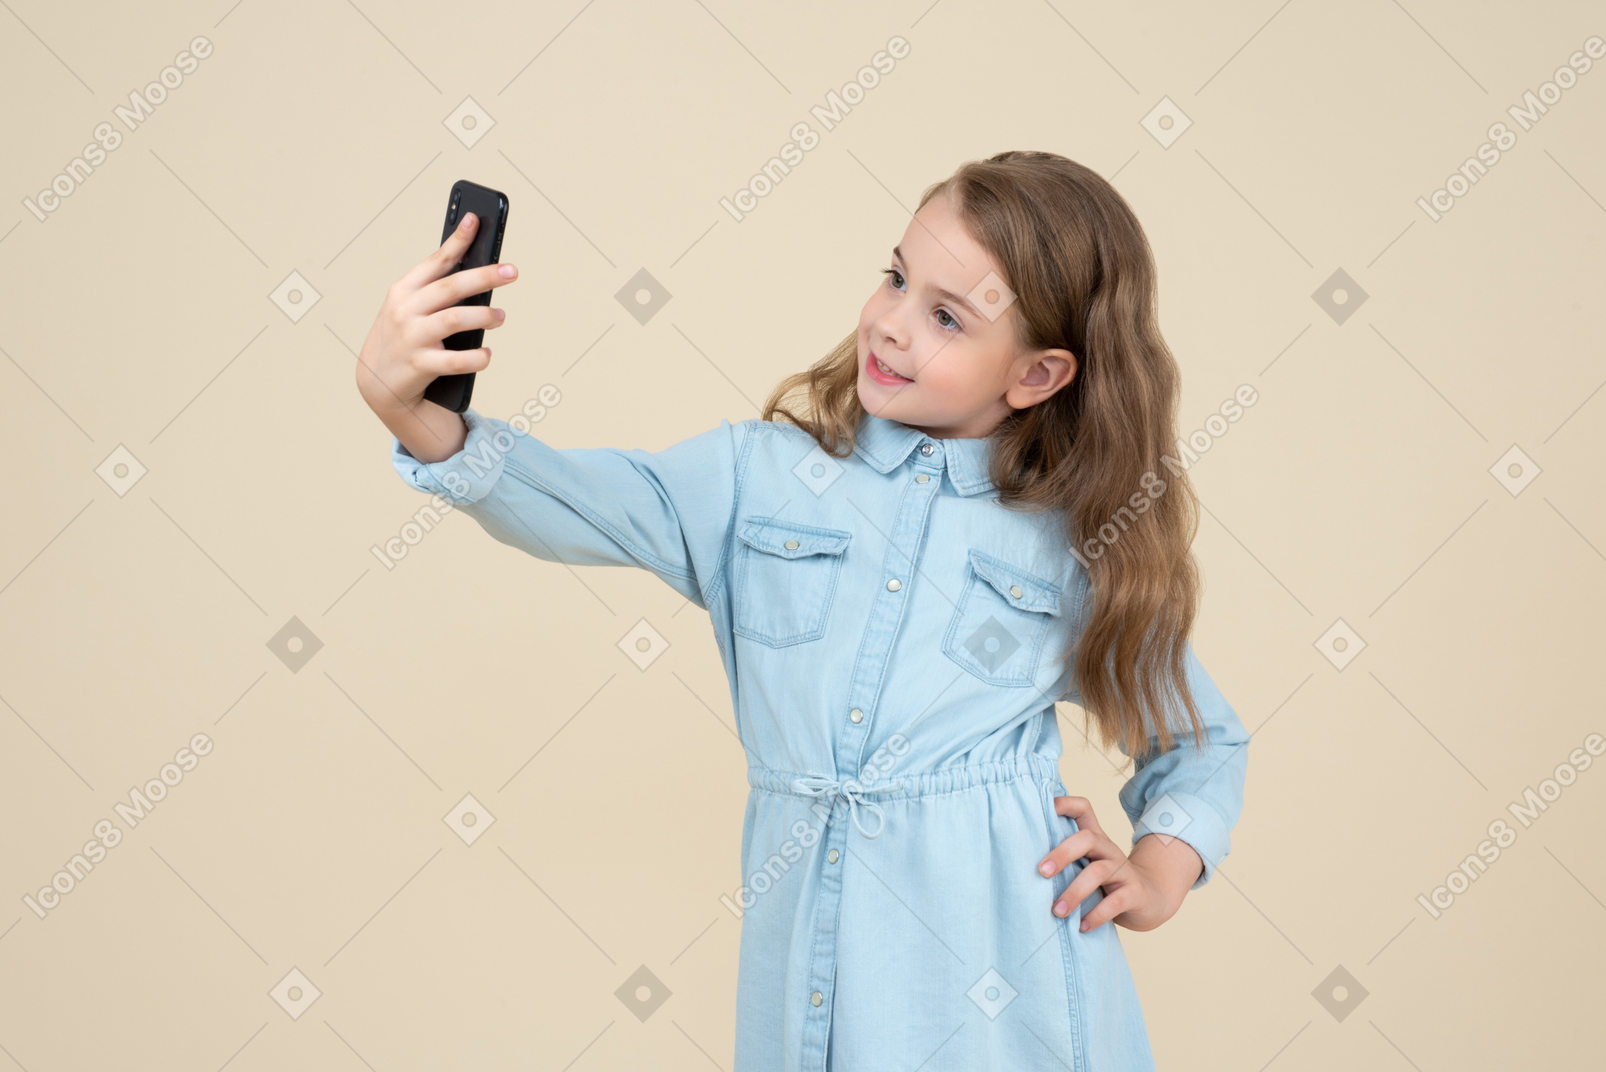 Jolie petite fille faisant un selfie